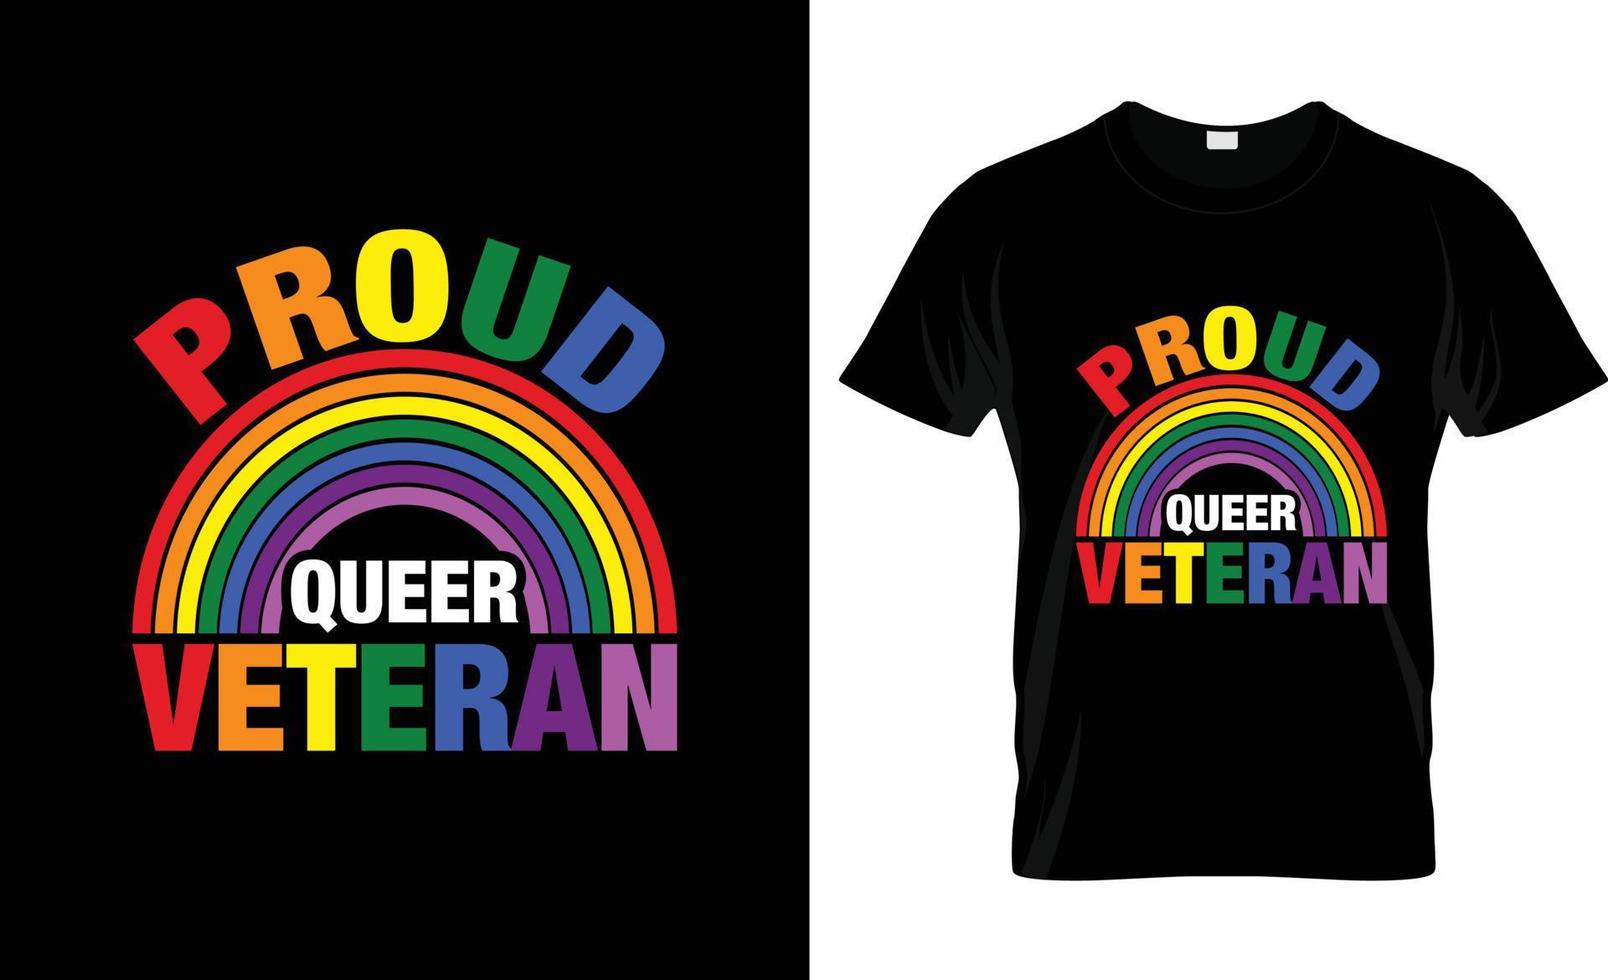 design de camiseta paga gay, slogan de camiseta paga gay e design de vestuário, tipografia paga gay, vetor pago gay, ilustração paga gay